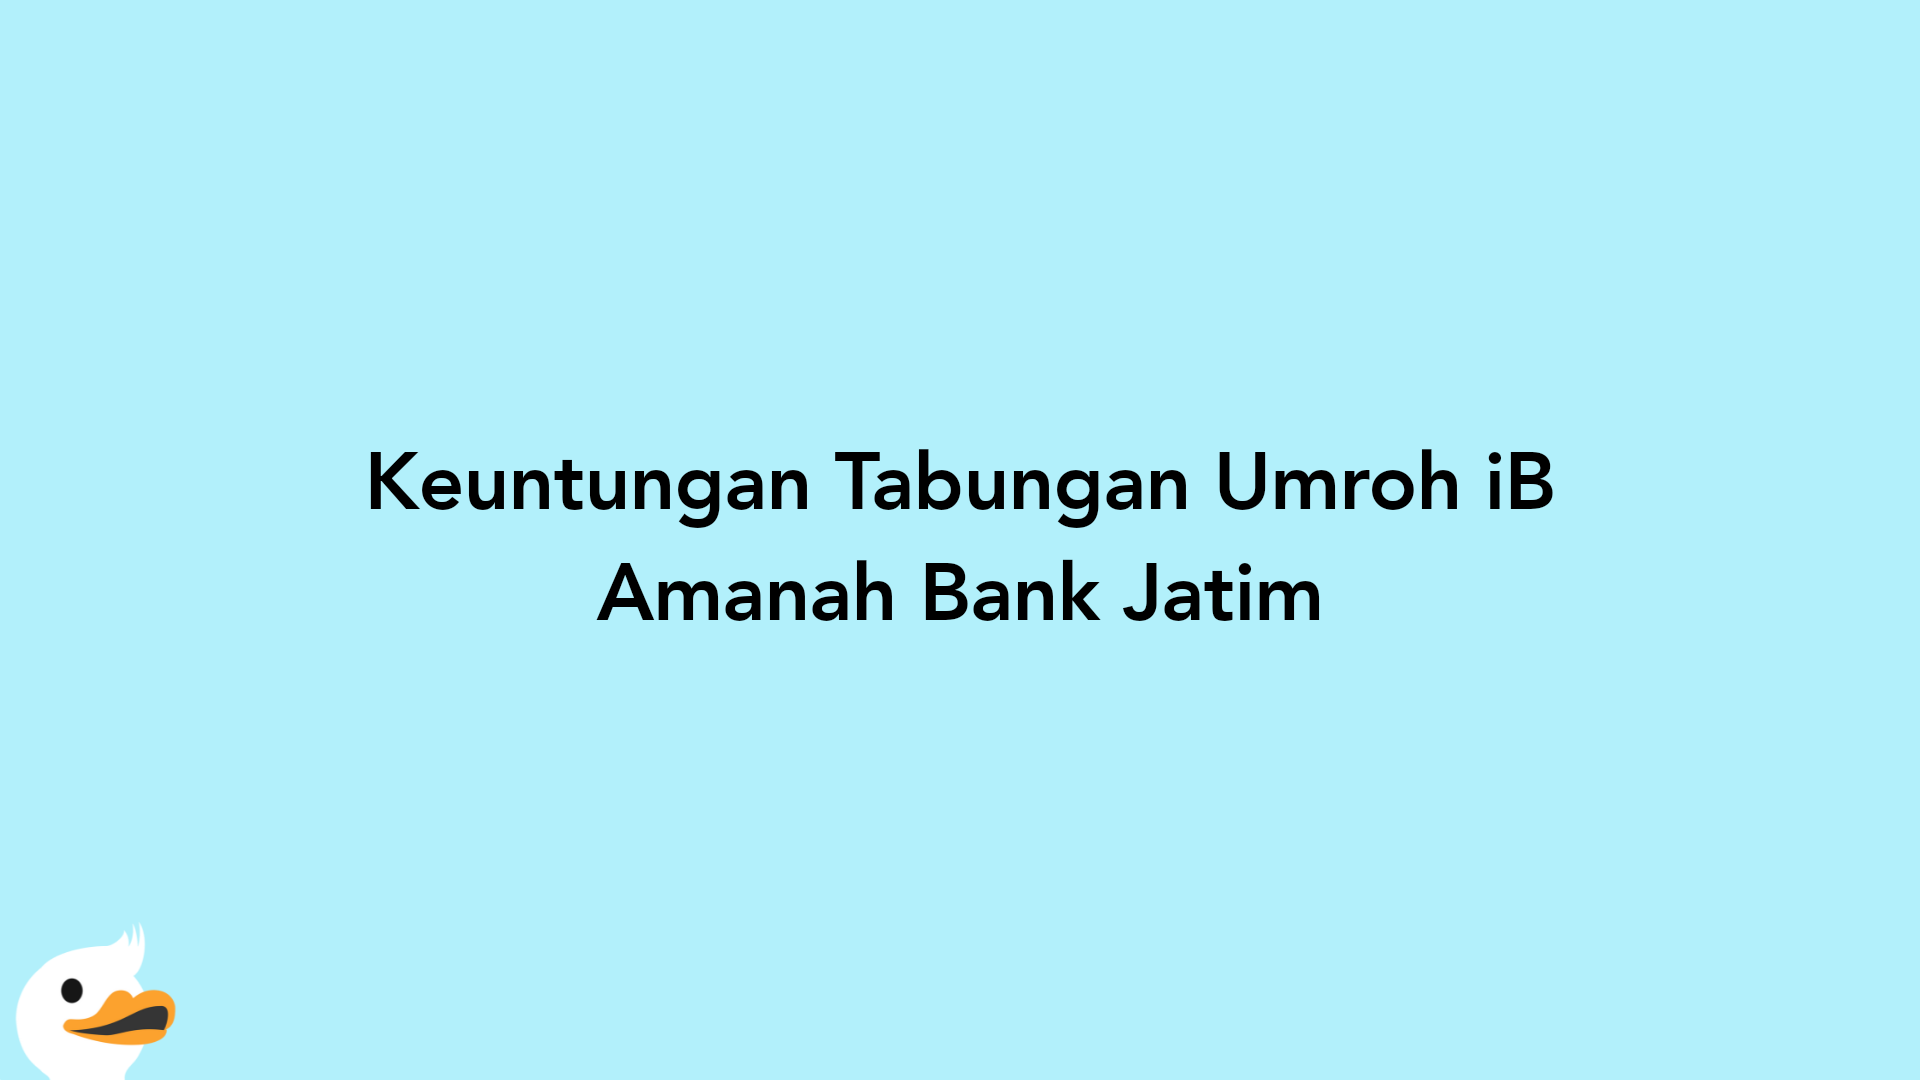 Keuntungan Tabungan Umroh iB Amanah Bank Jatim